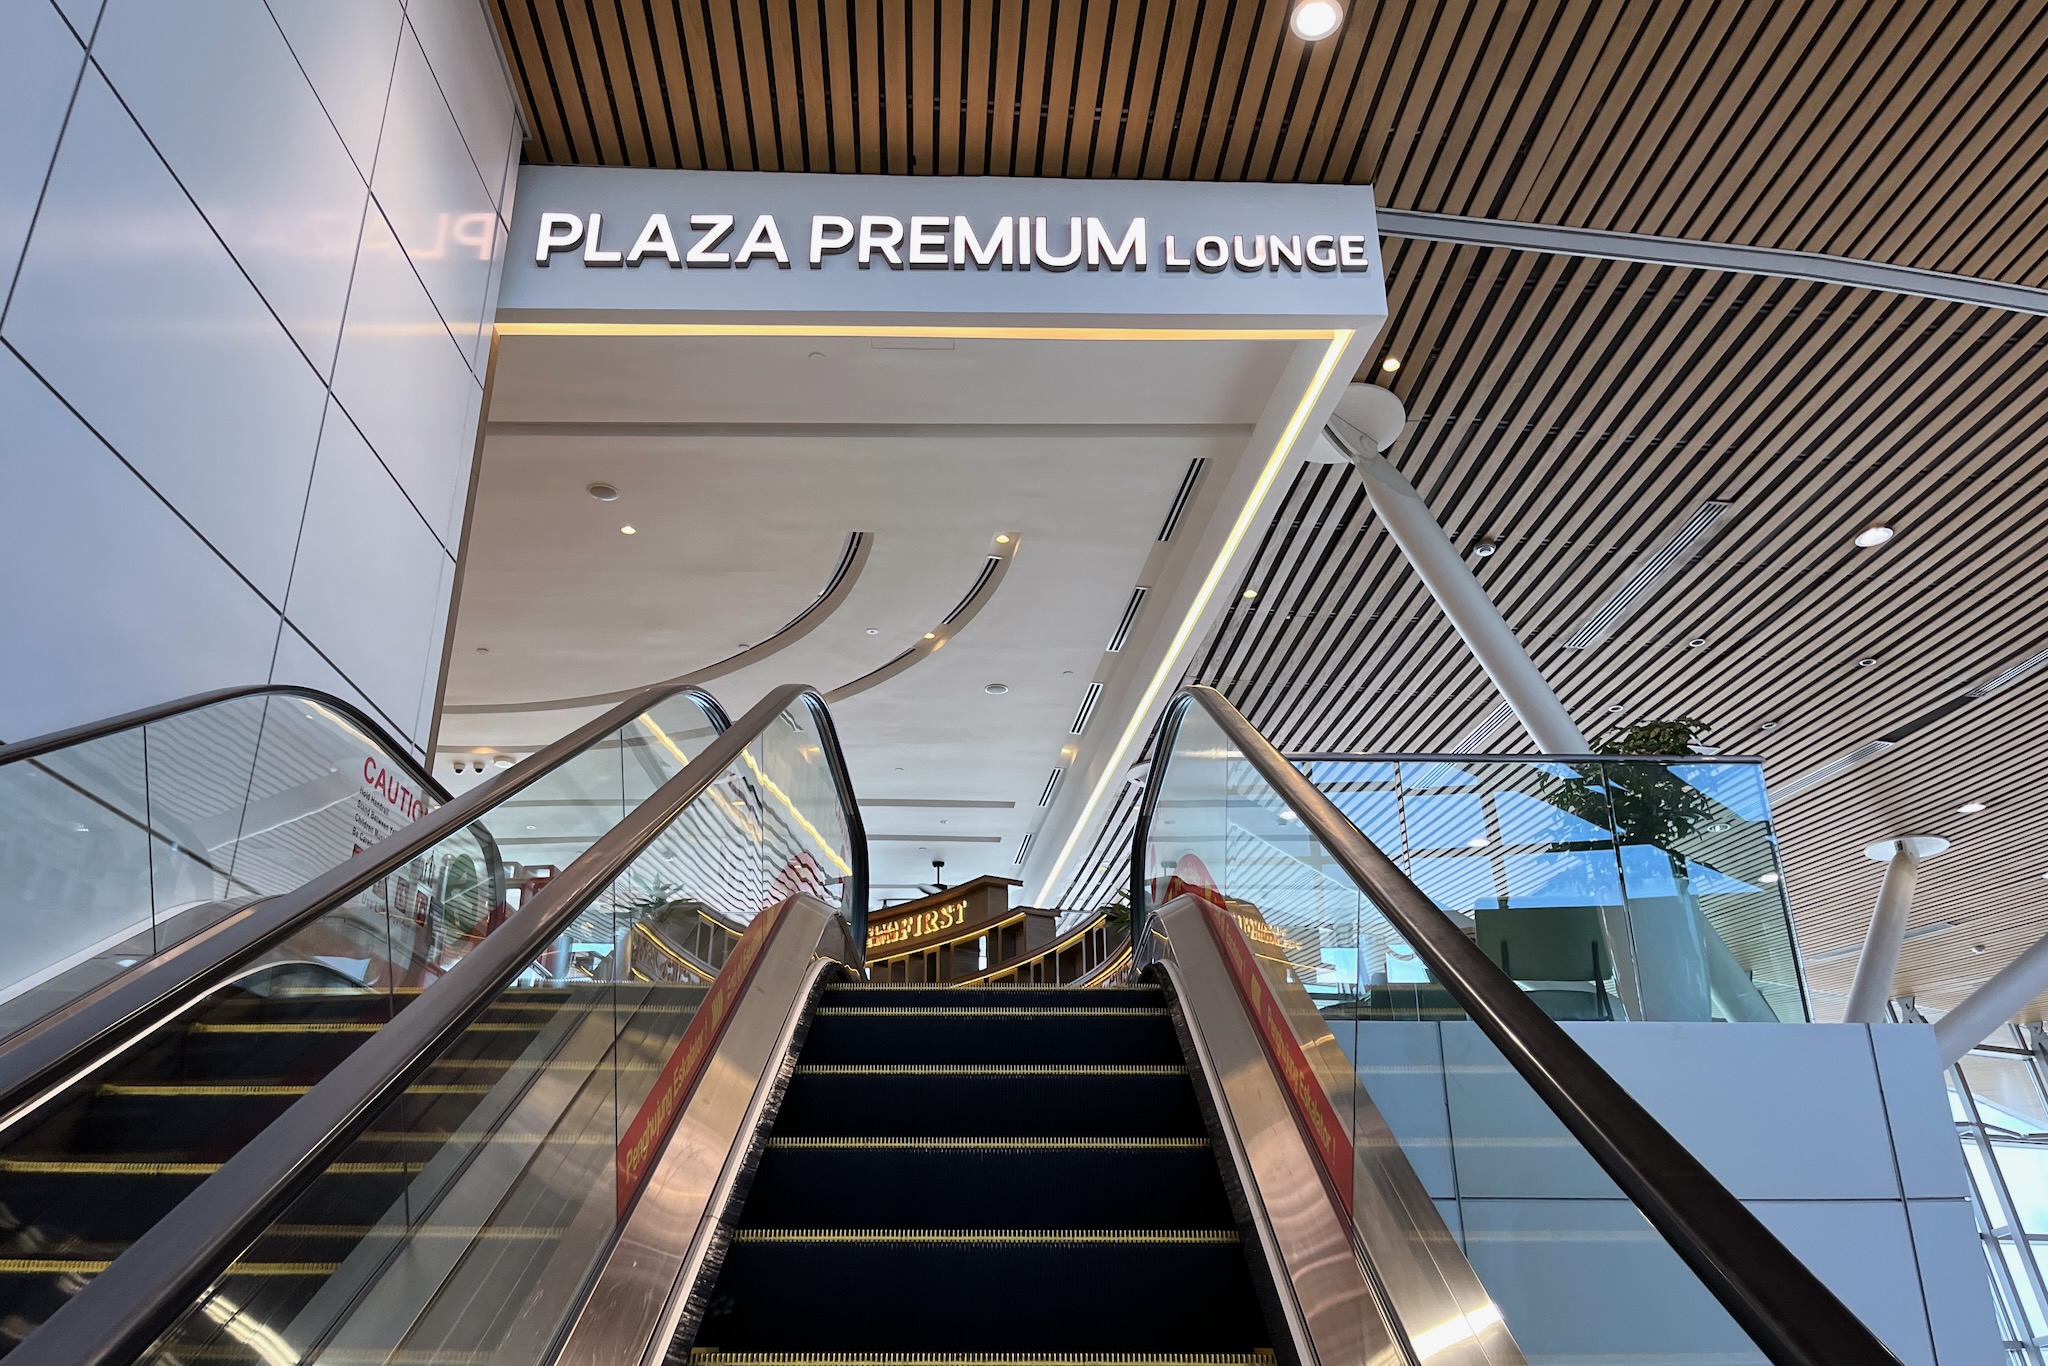 Plaza Premium Lounge Kuala Lumpur